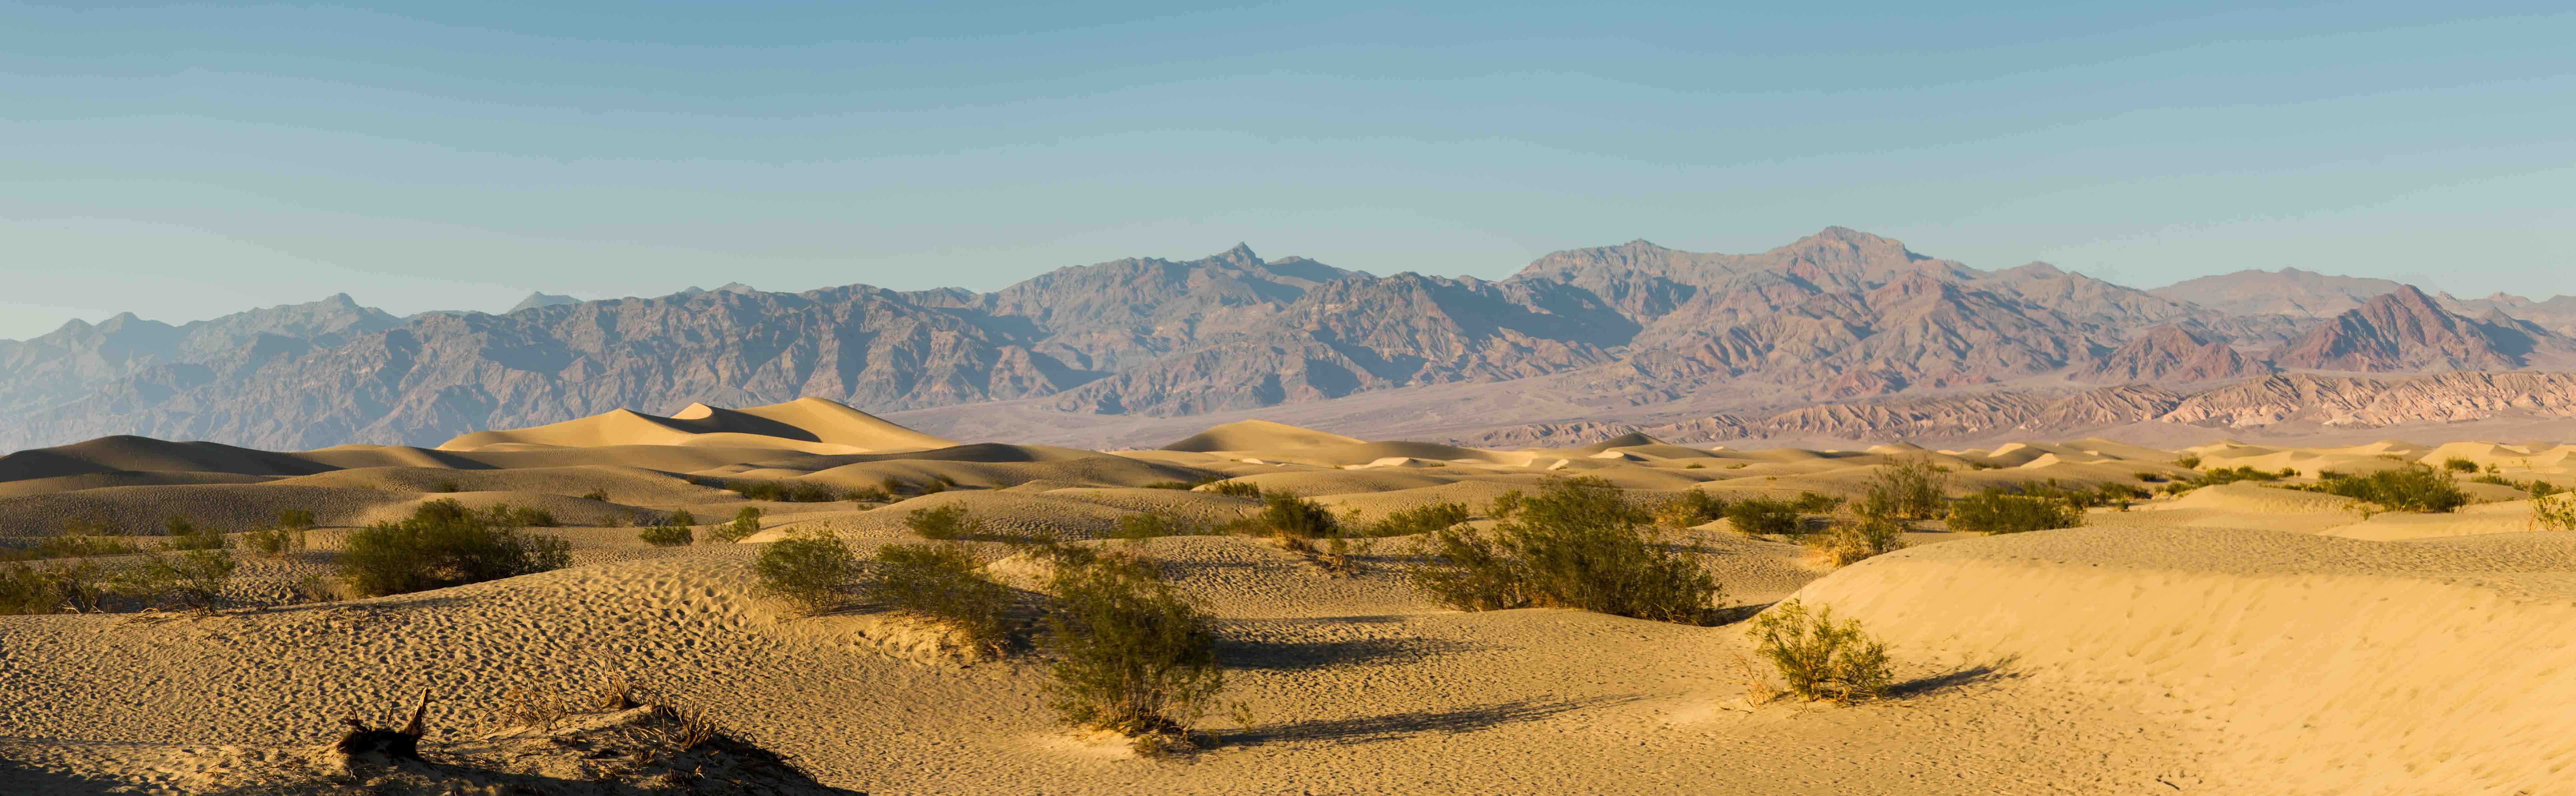 Roadtrip désert montagne dunes Californie Mesquite flat dunes Las Vegas Los Angeles San Francisco blog carnet de voyage